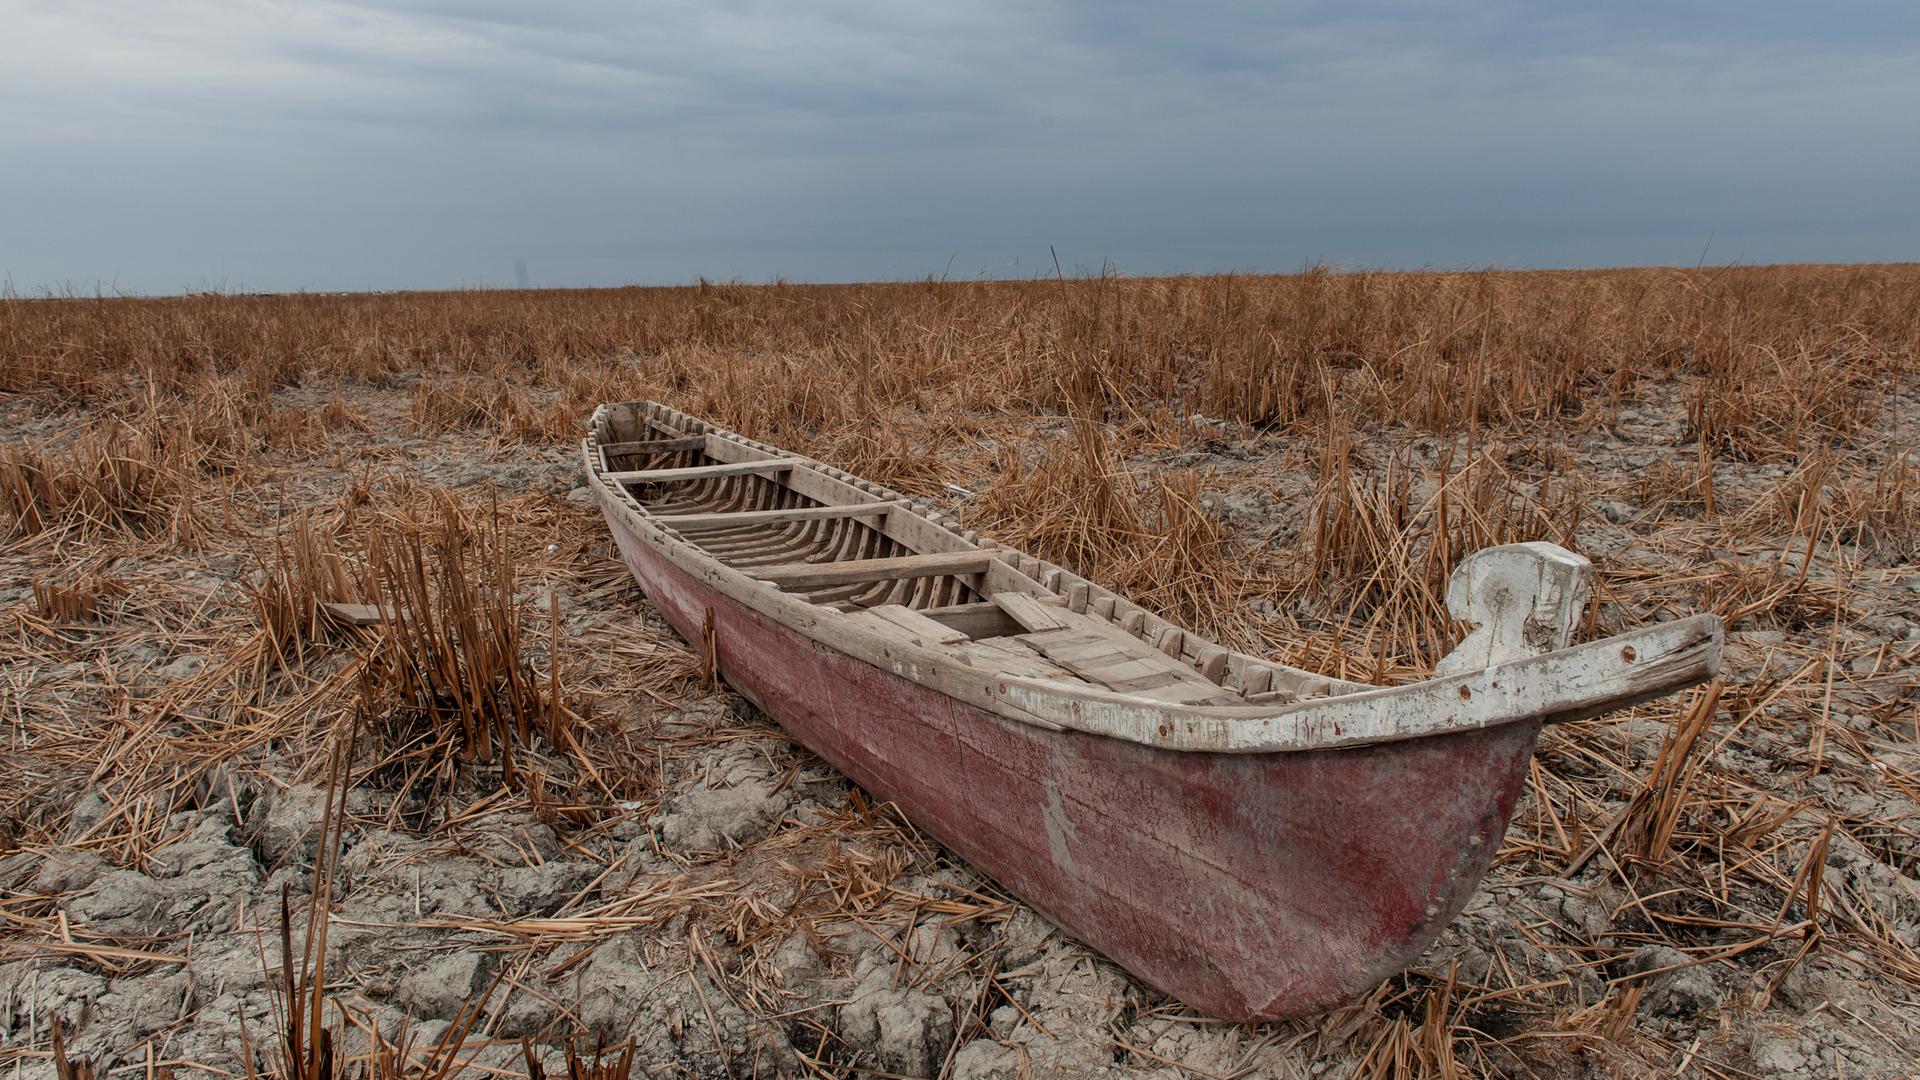 Ein rötliches Boot liegt in einer trockenen Wüstenlandschaft. Wasser ist weit und breit keines zu sehen.